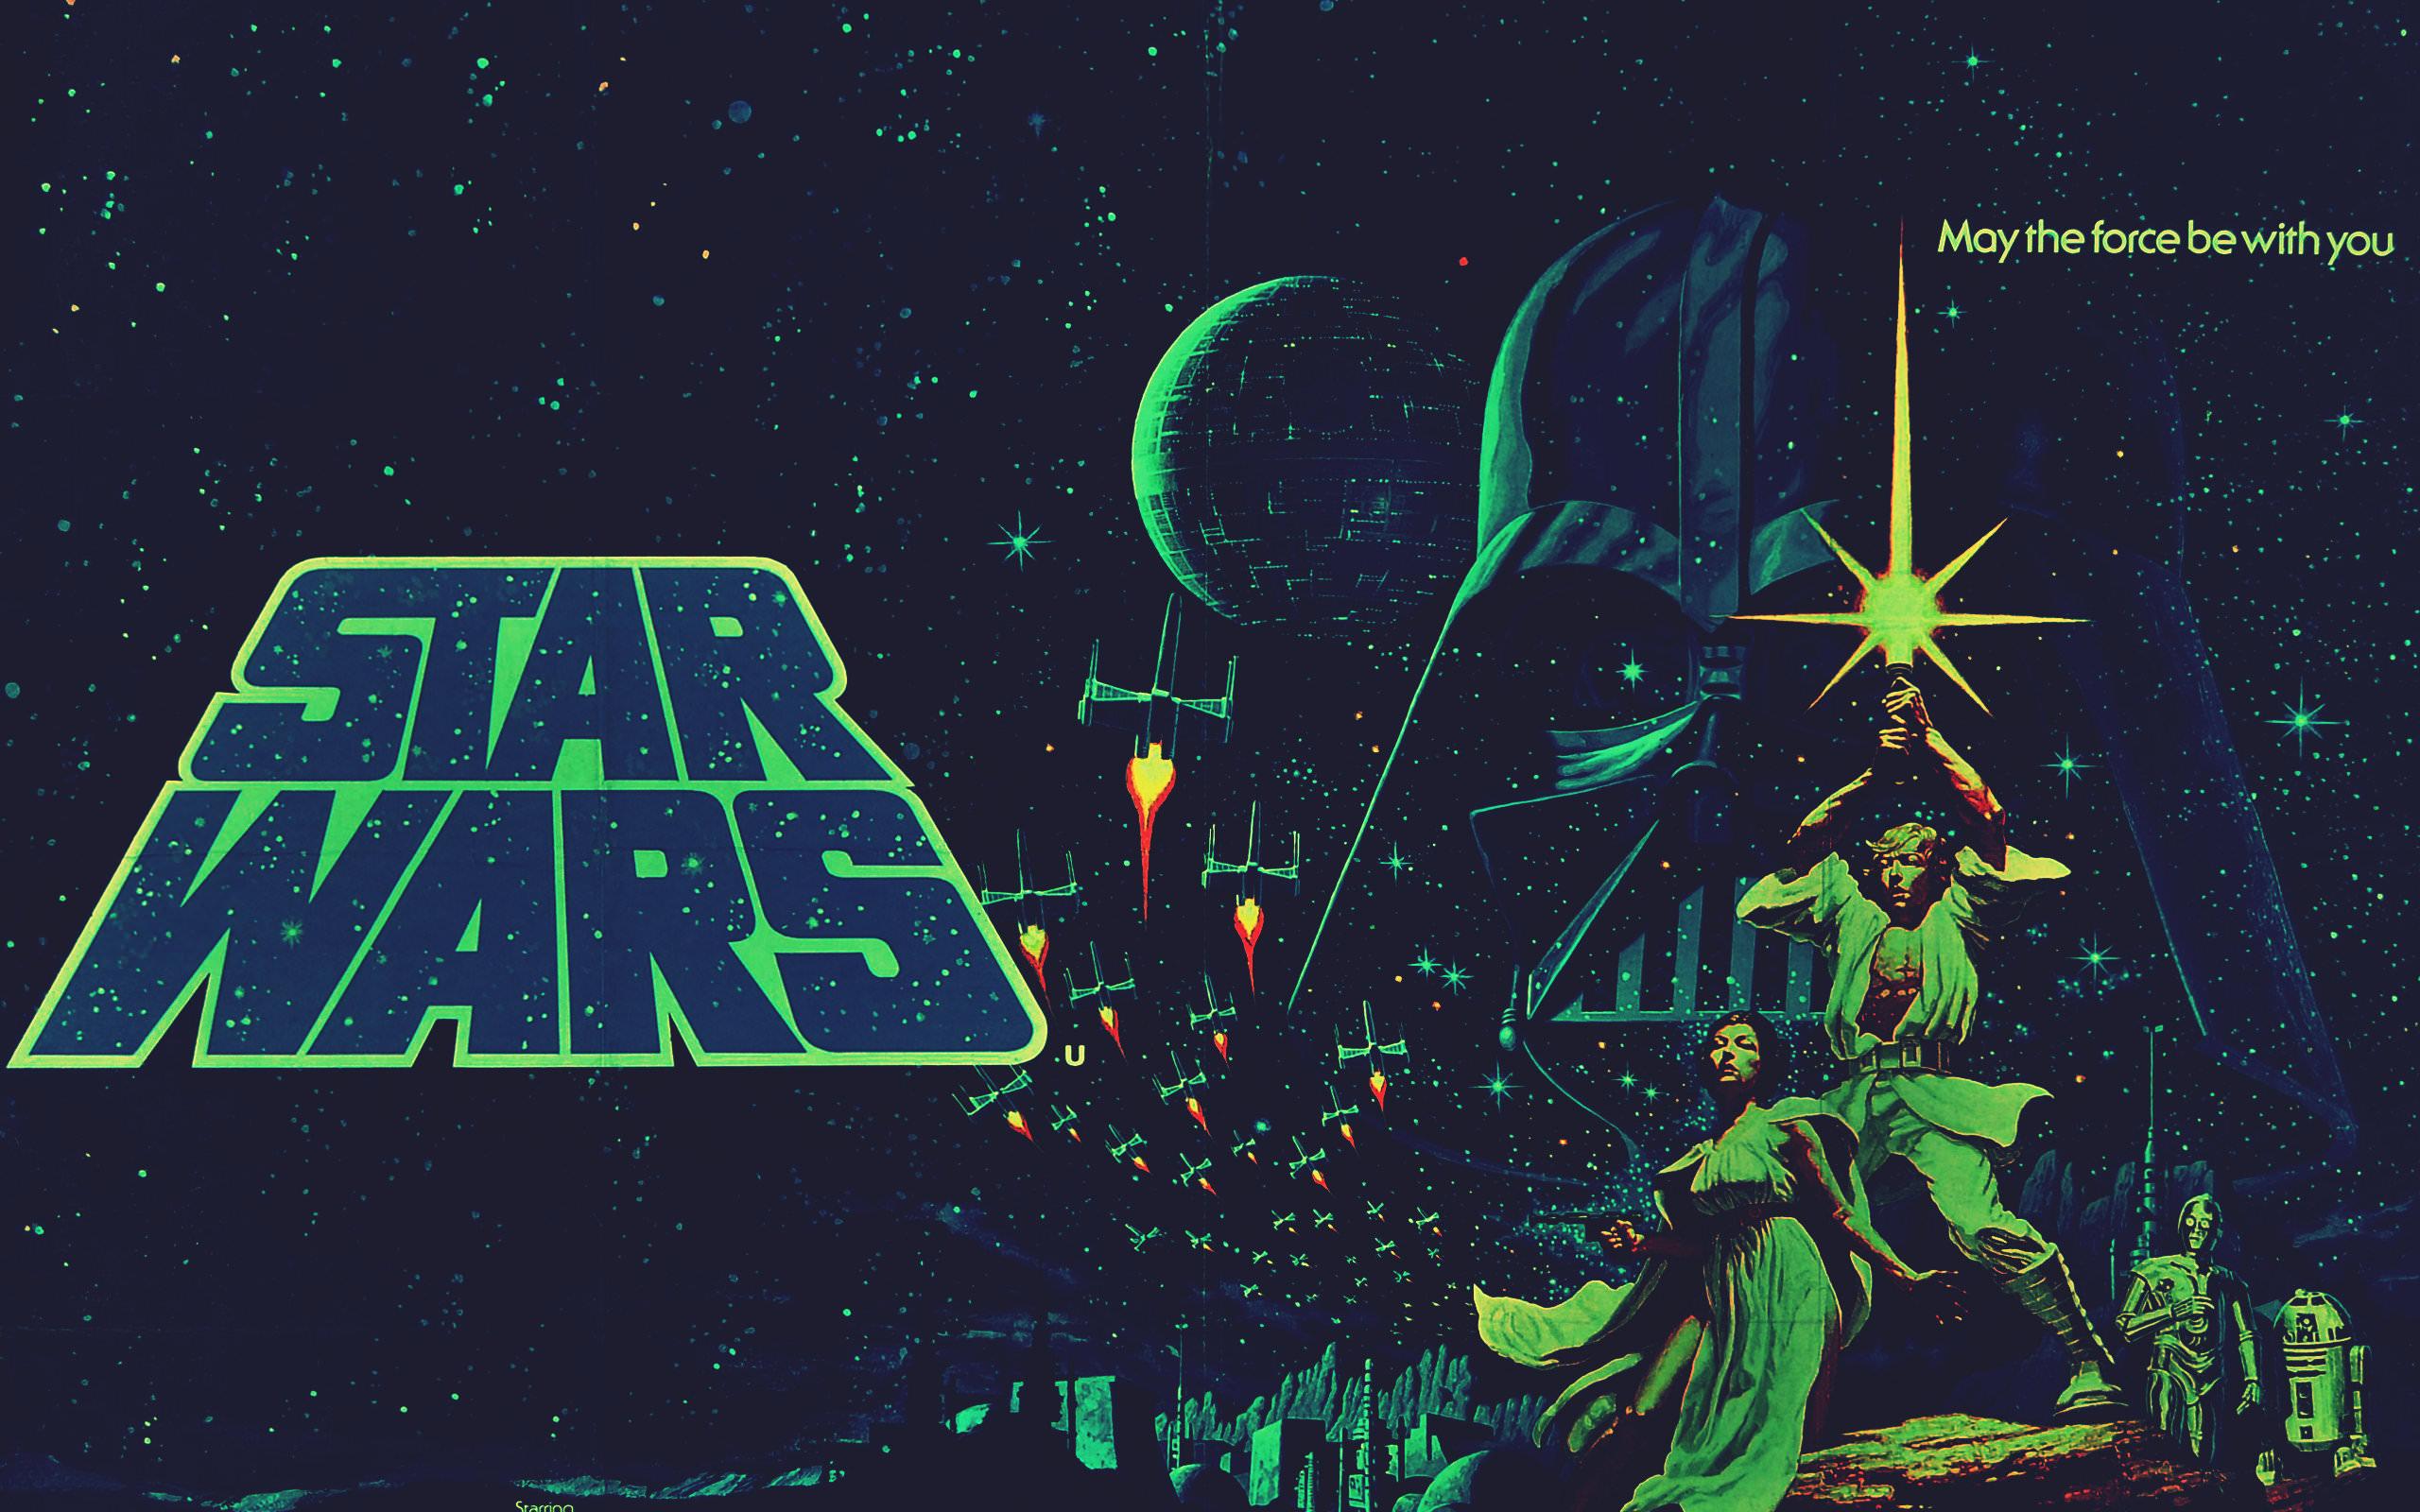 Star Wars Episode 4 (IV): A New Hope wallpaper HD for desktop background